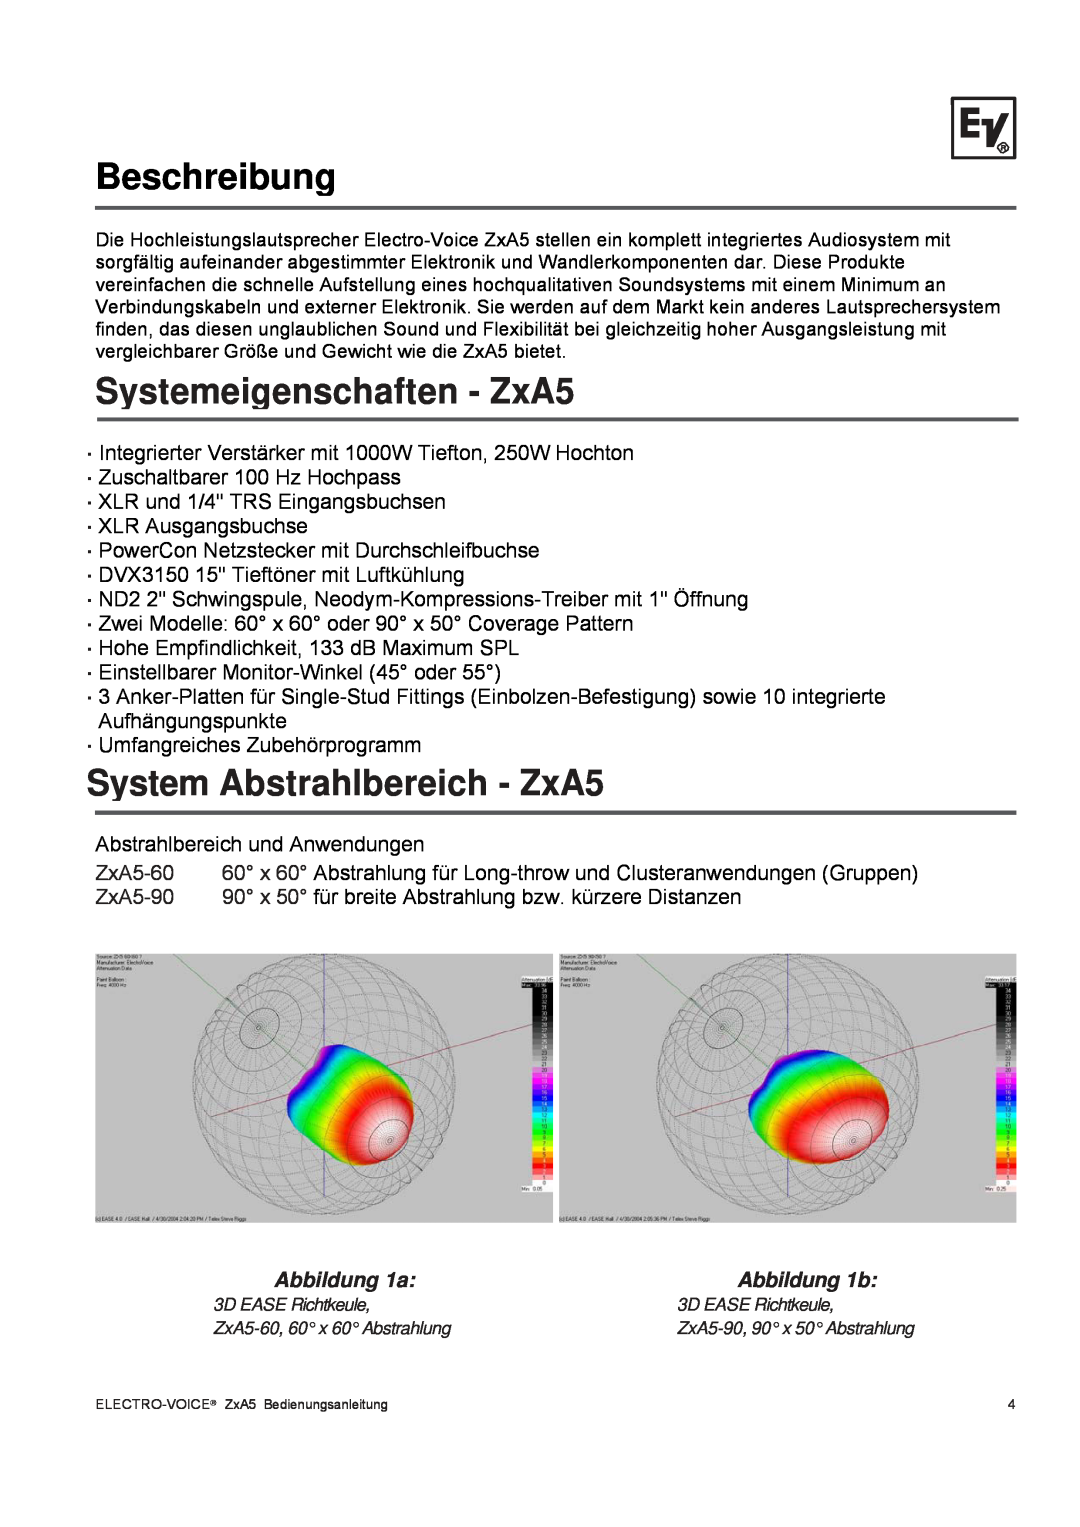 Pentax ZXA5-90 Beschreibung, Systemeigenschaften - ZxA5, System Abstrahlbereich - ZxA5, Abbildung 1a, Abbildung 1b 